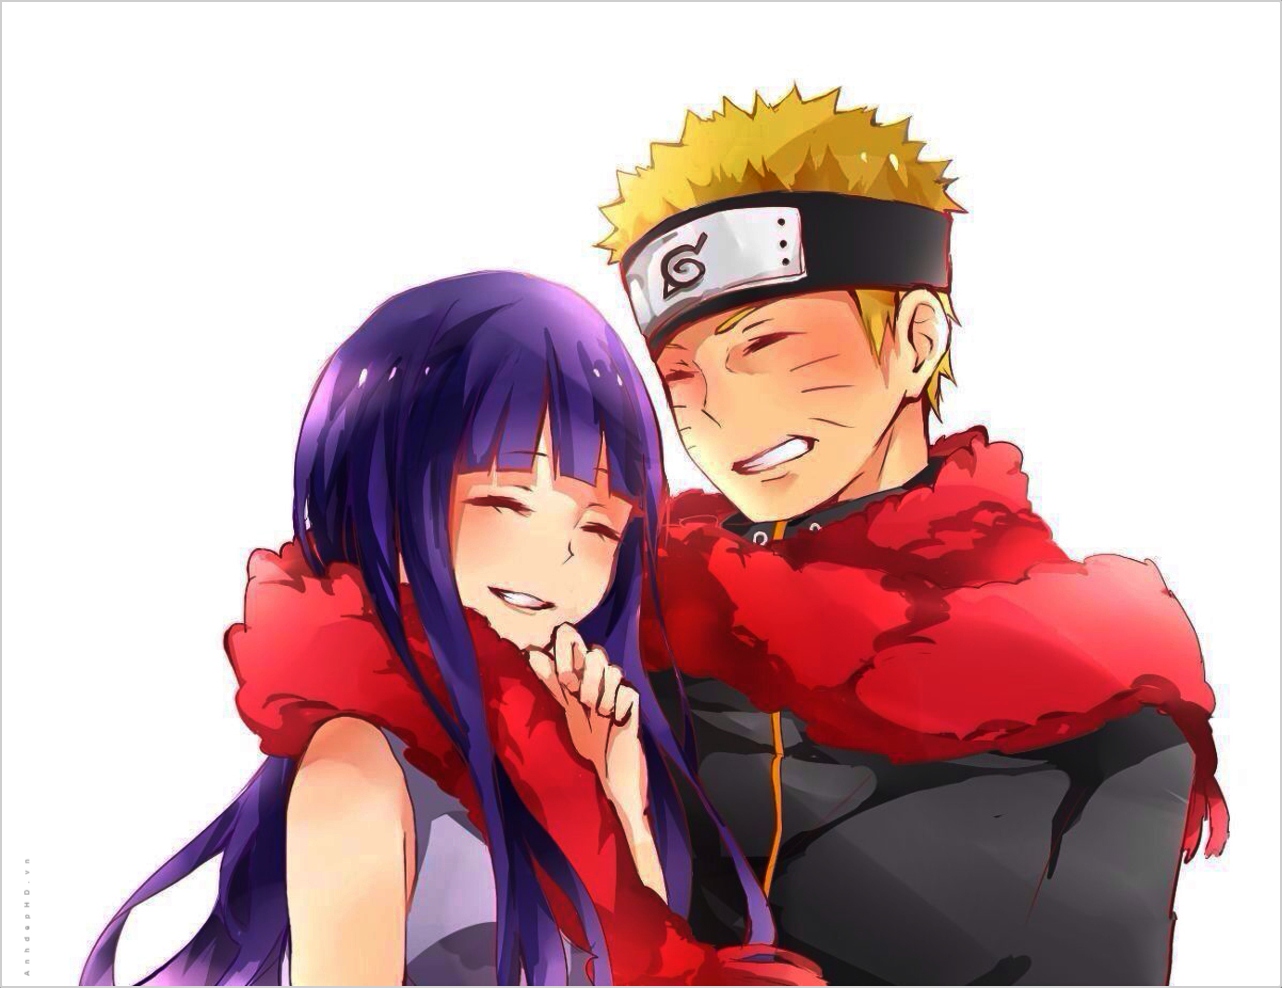 Naruto và Hinata - cặp đôi đầy tình yêu và hạnh phúc trong thế giới anime Naruto. Bên cạnh những trận chiến, những nhiệm vụ đầy thử thách, tình yêu của họ vẫn được giữ vững và phát triển. Hãy thưởng thức những hình ảnh đẹp của Naruto và Hinata trong những khoảnh khắc hạnh phúc để cảm nhận trọn vẹn tình yêu và sức mạnh của họ.